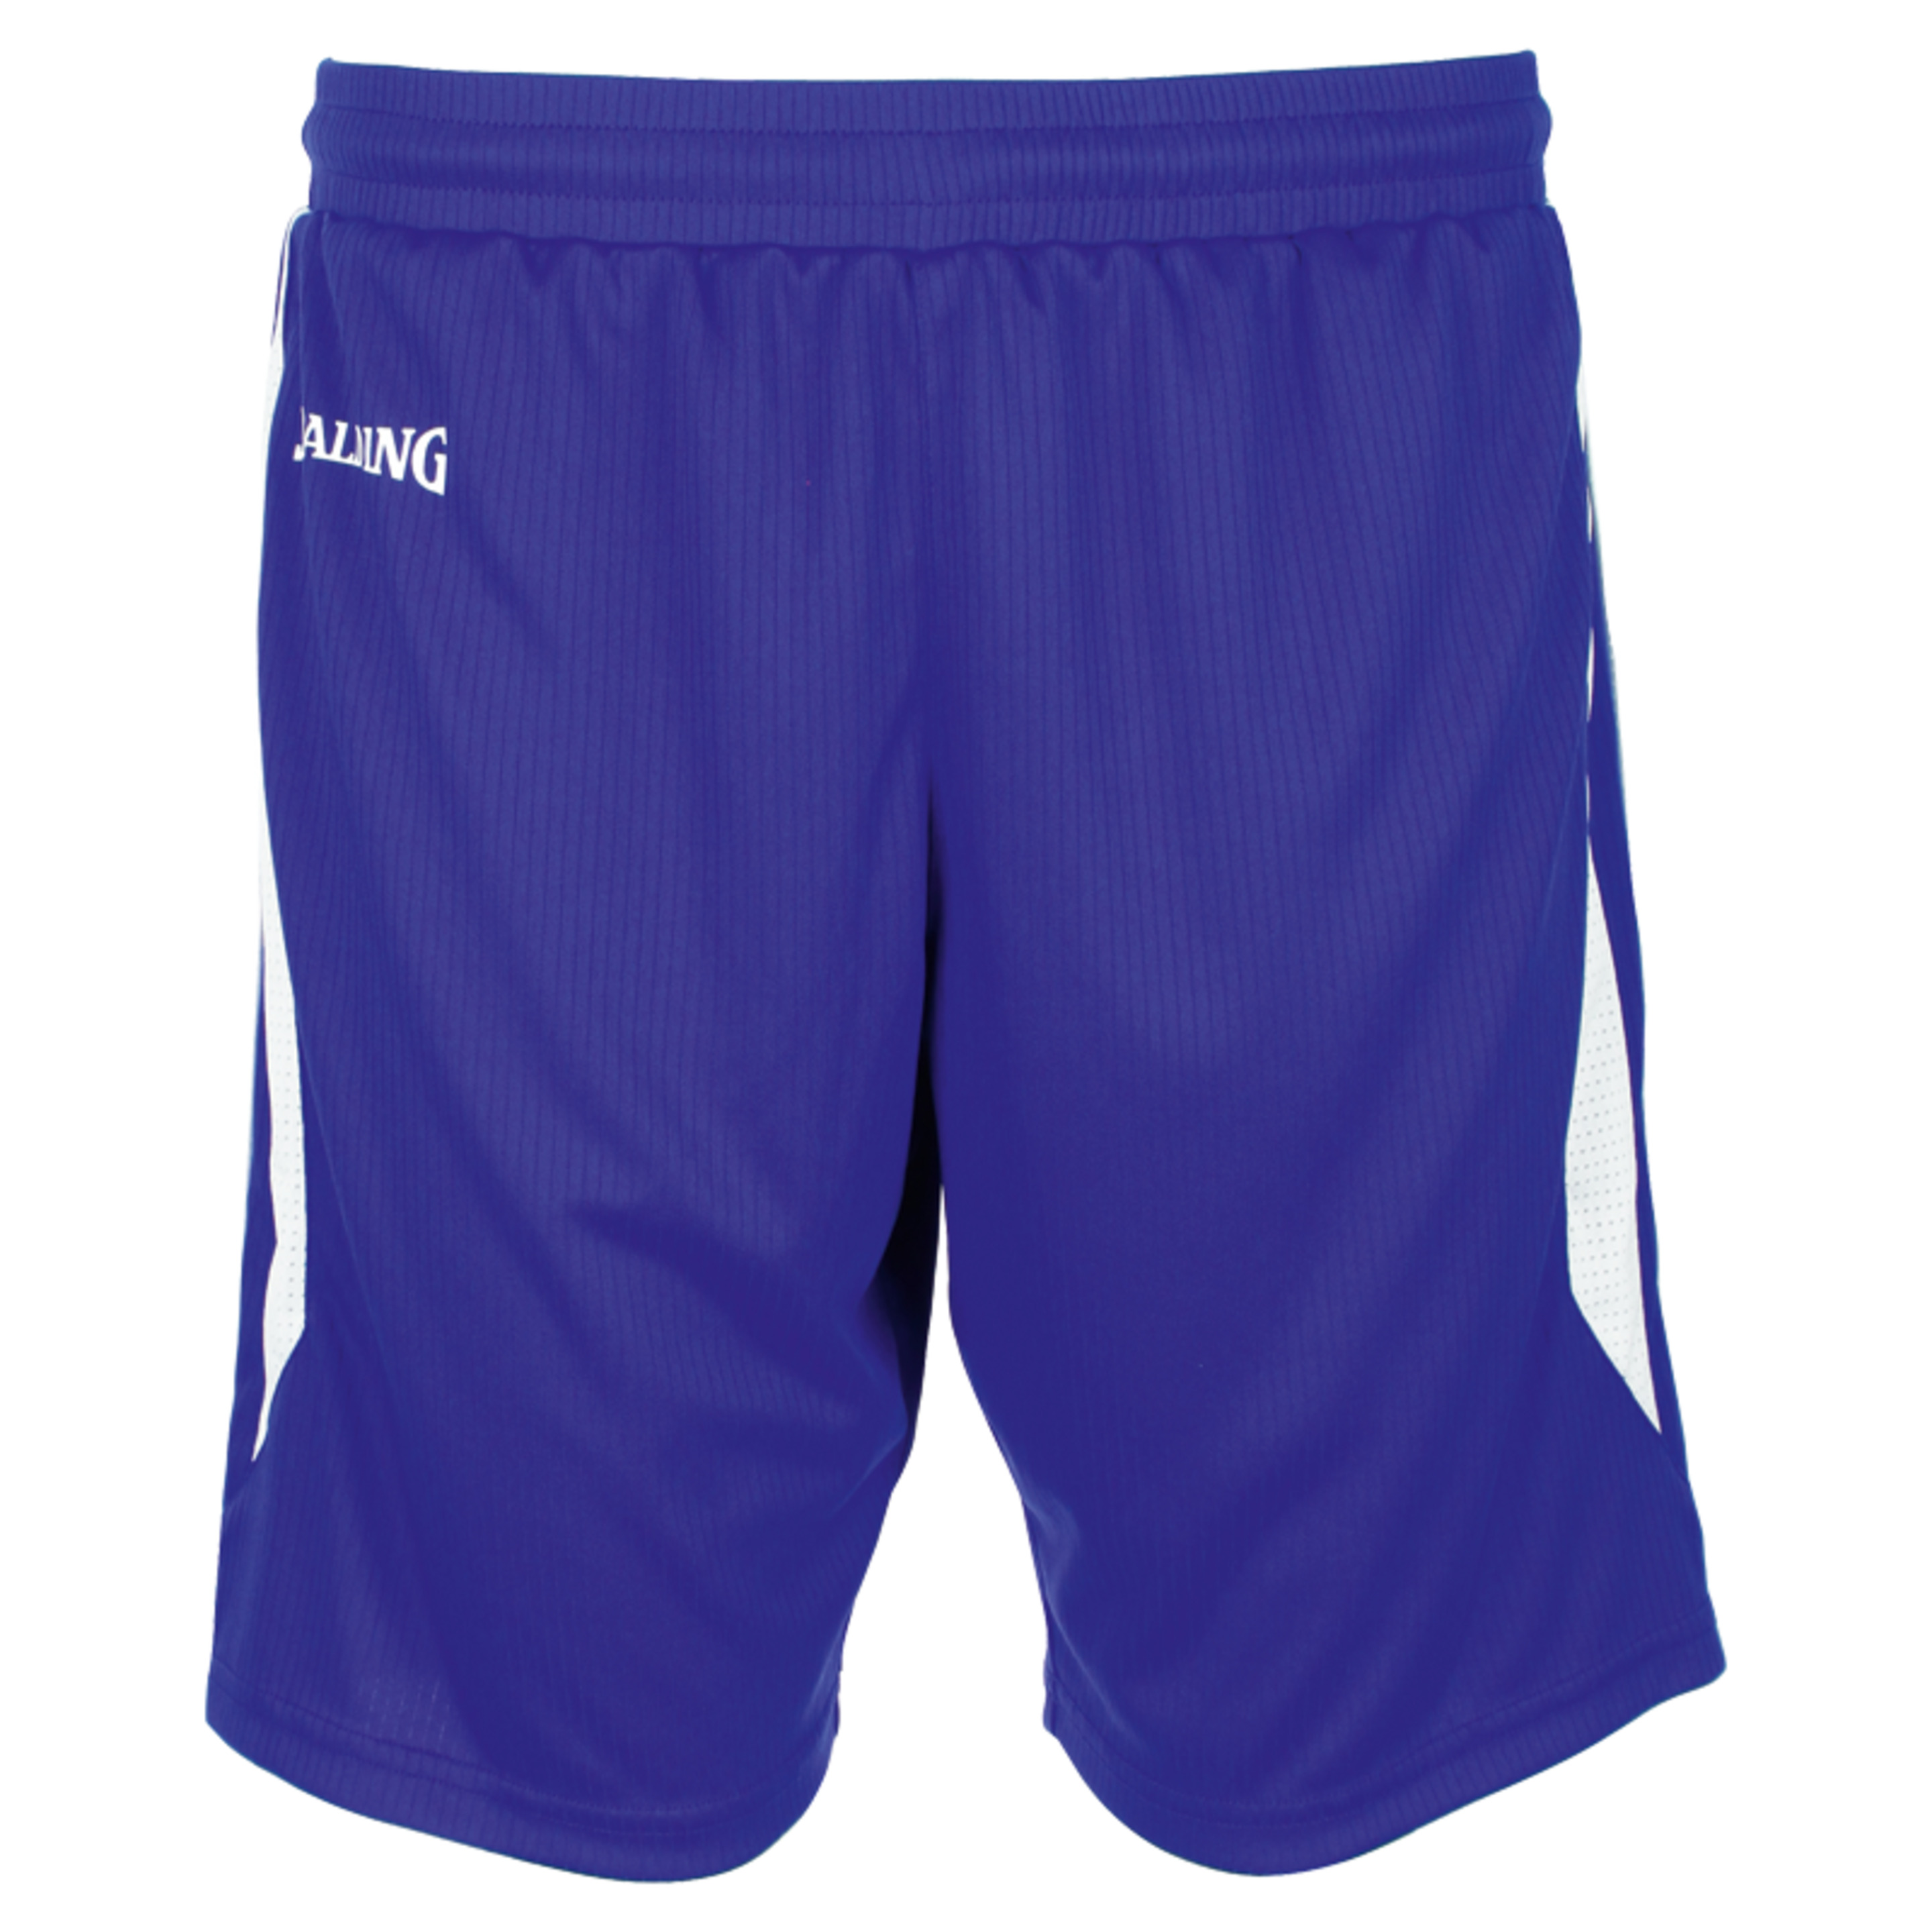 4her Iii Shorts Azul Royal/blanco Spalding